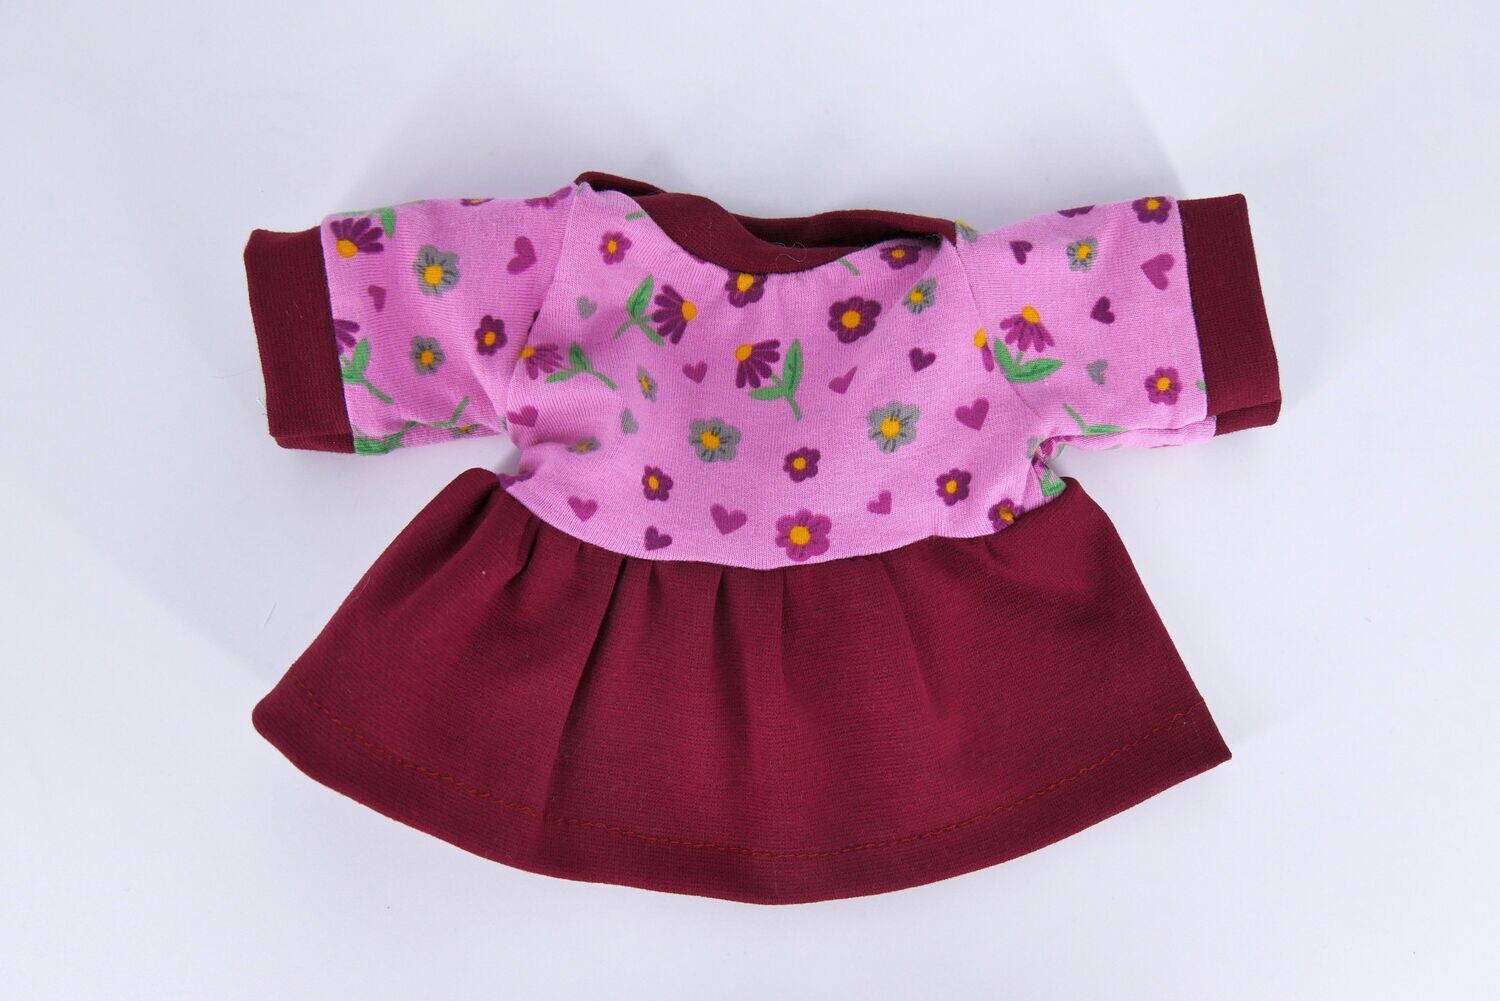 Jerseykleid für Elsklinger Sandwichkinder || weinrot-altrosa || süßes Jerseykleid mit amerikanischem Kragen || für 35cm große Puppen